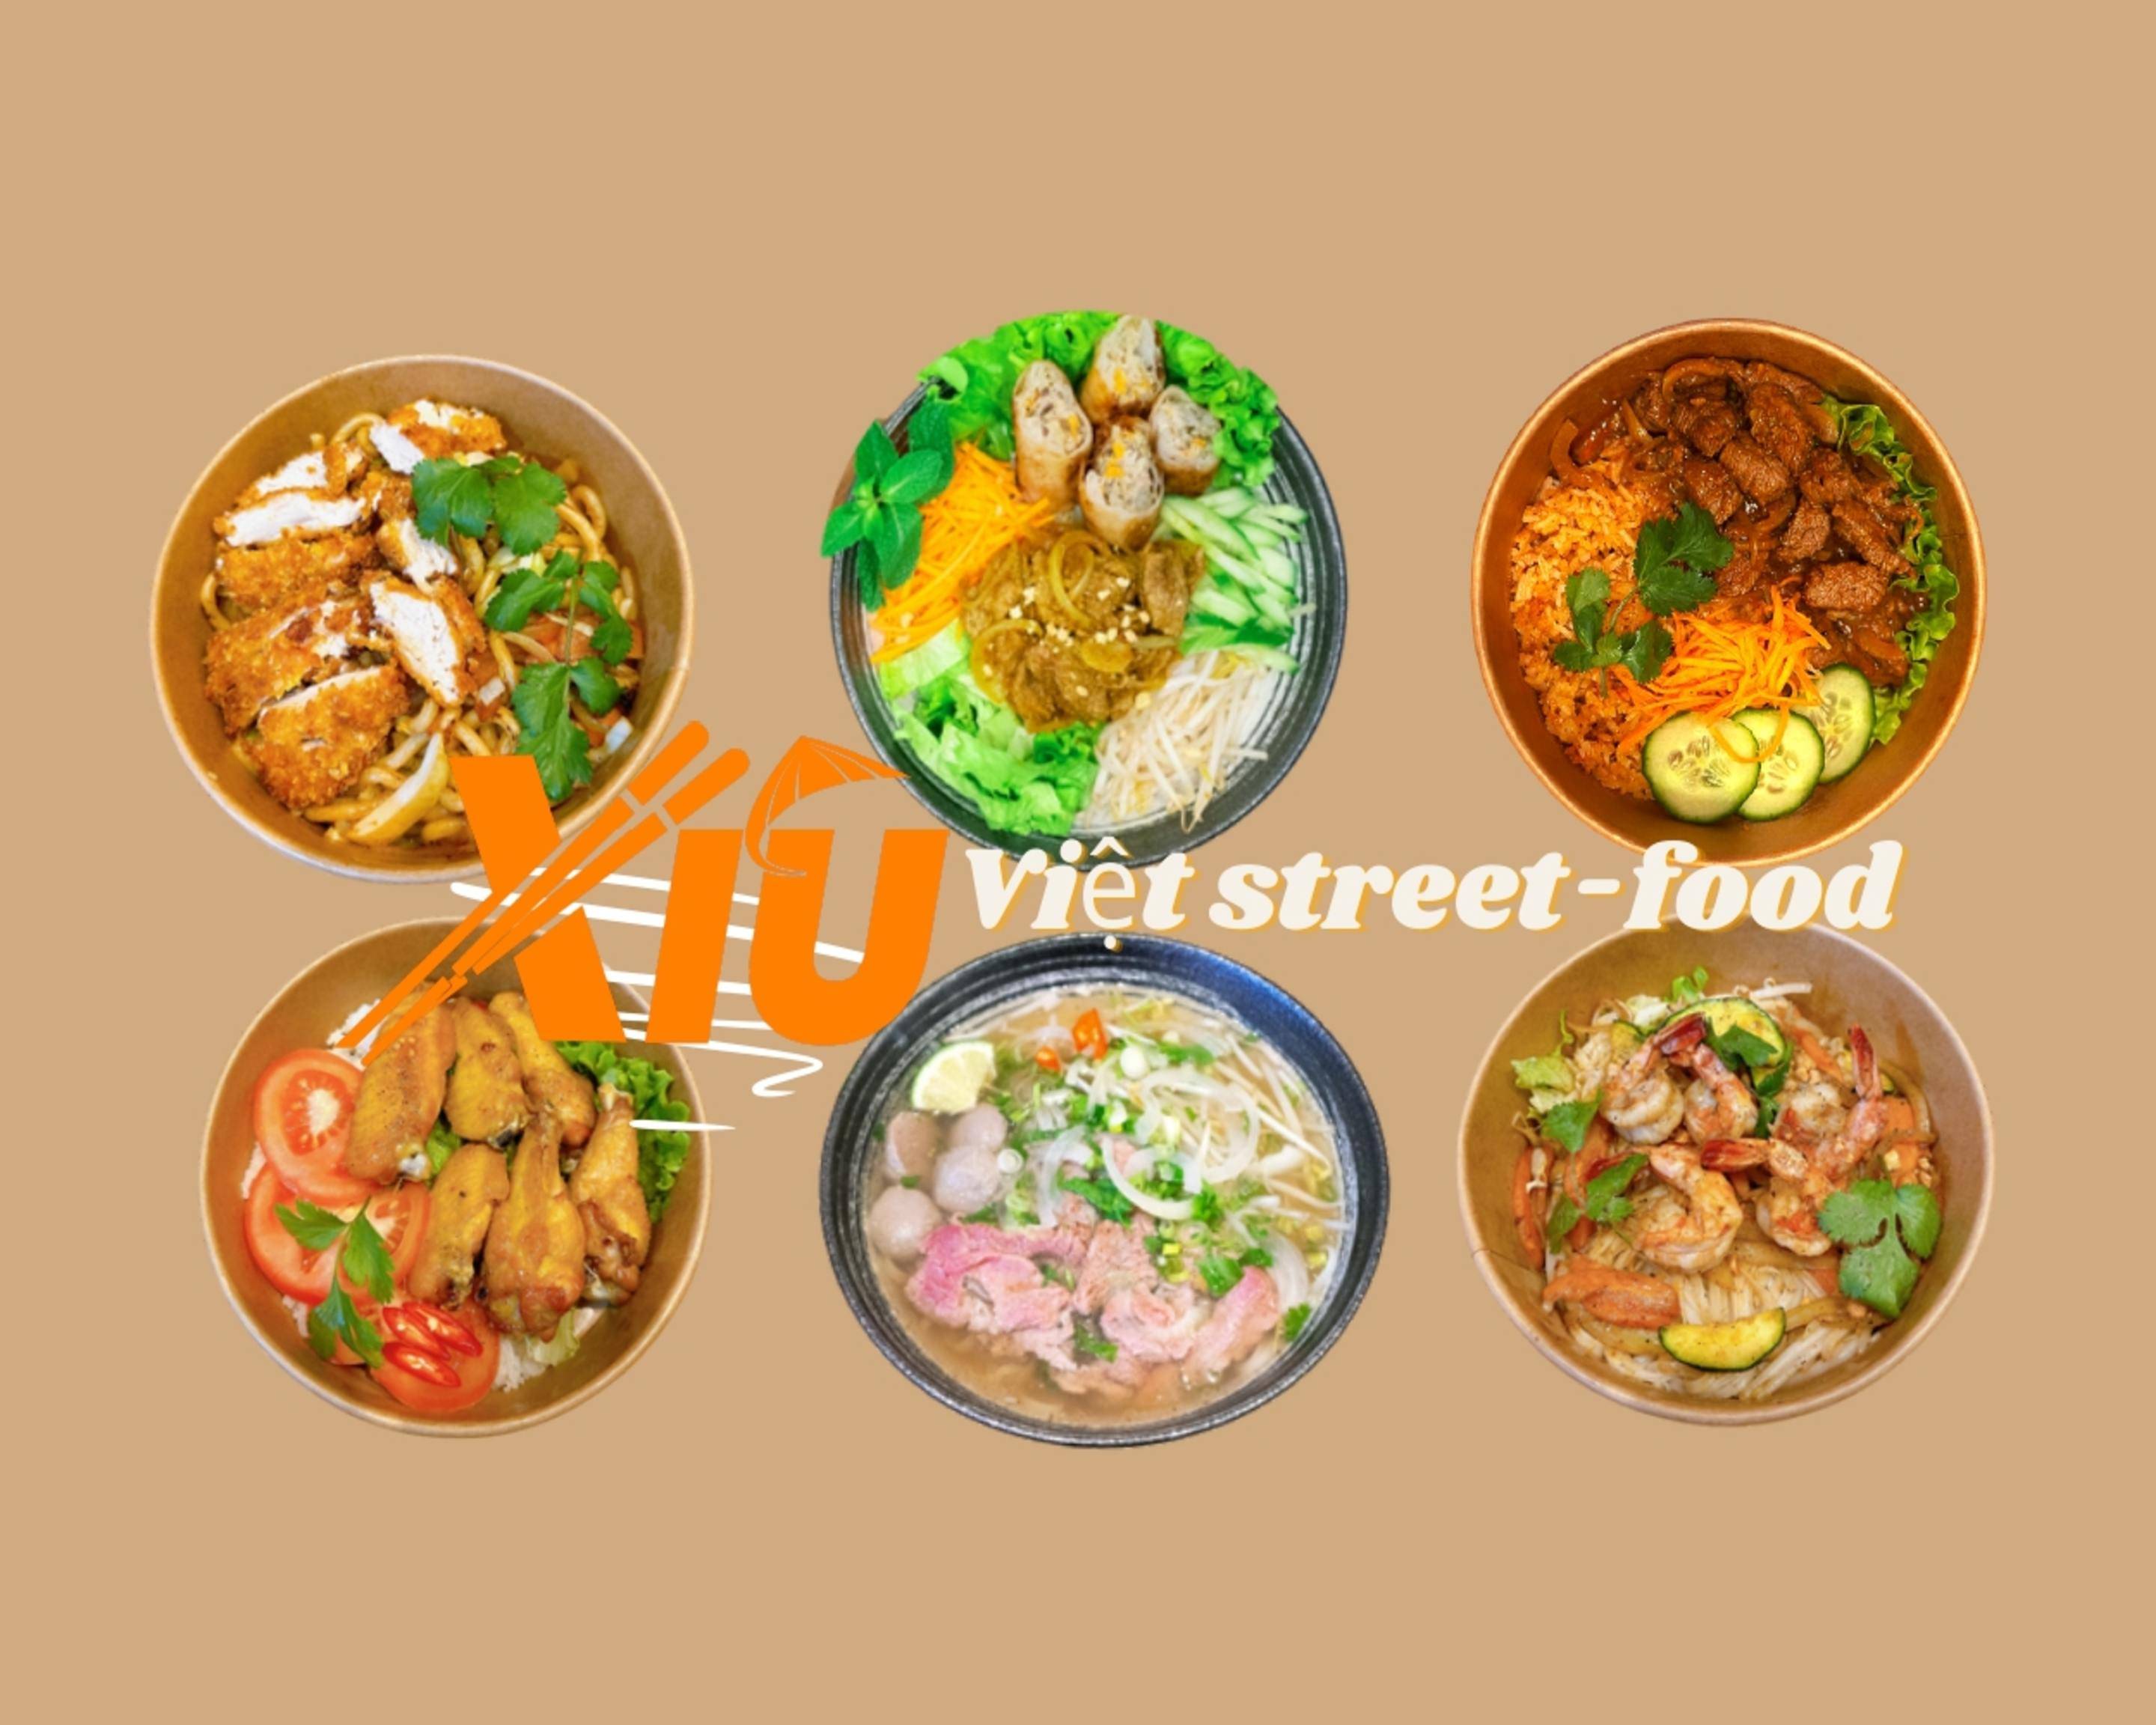 Xiu Street Food Menu Delivery Online